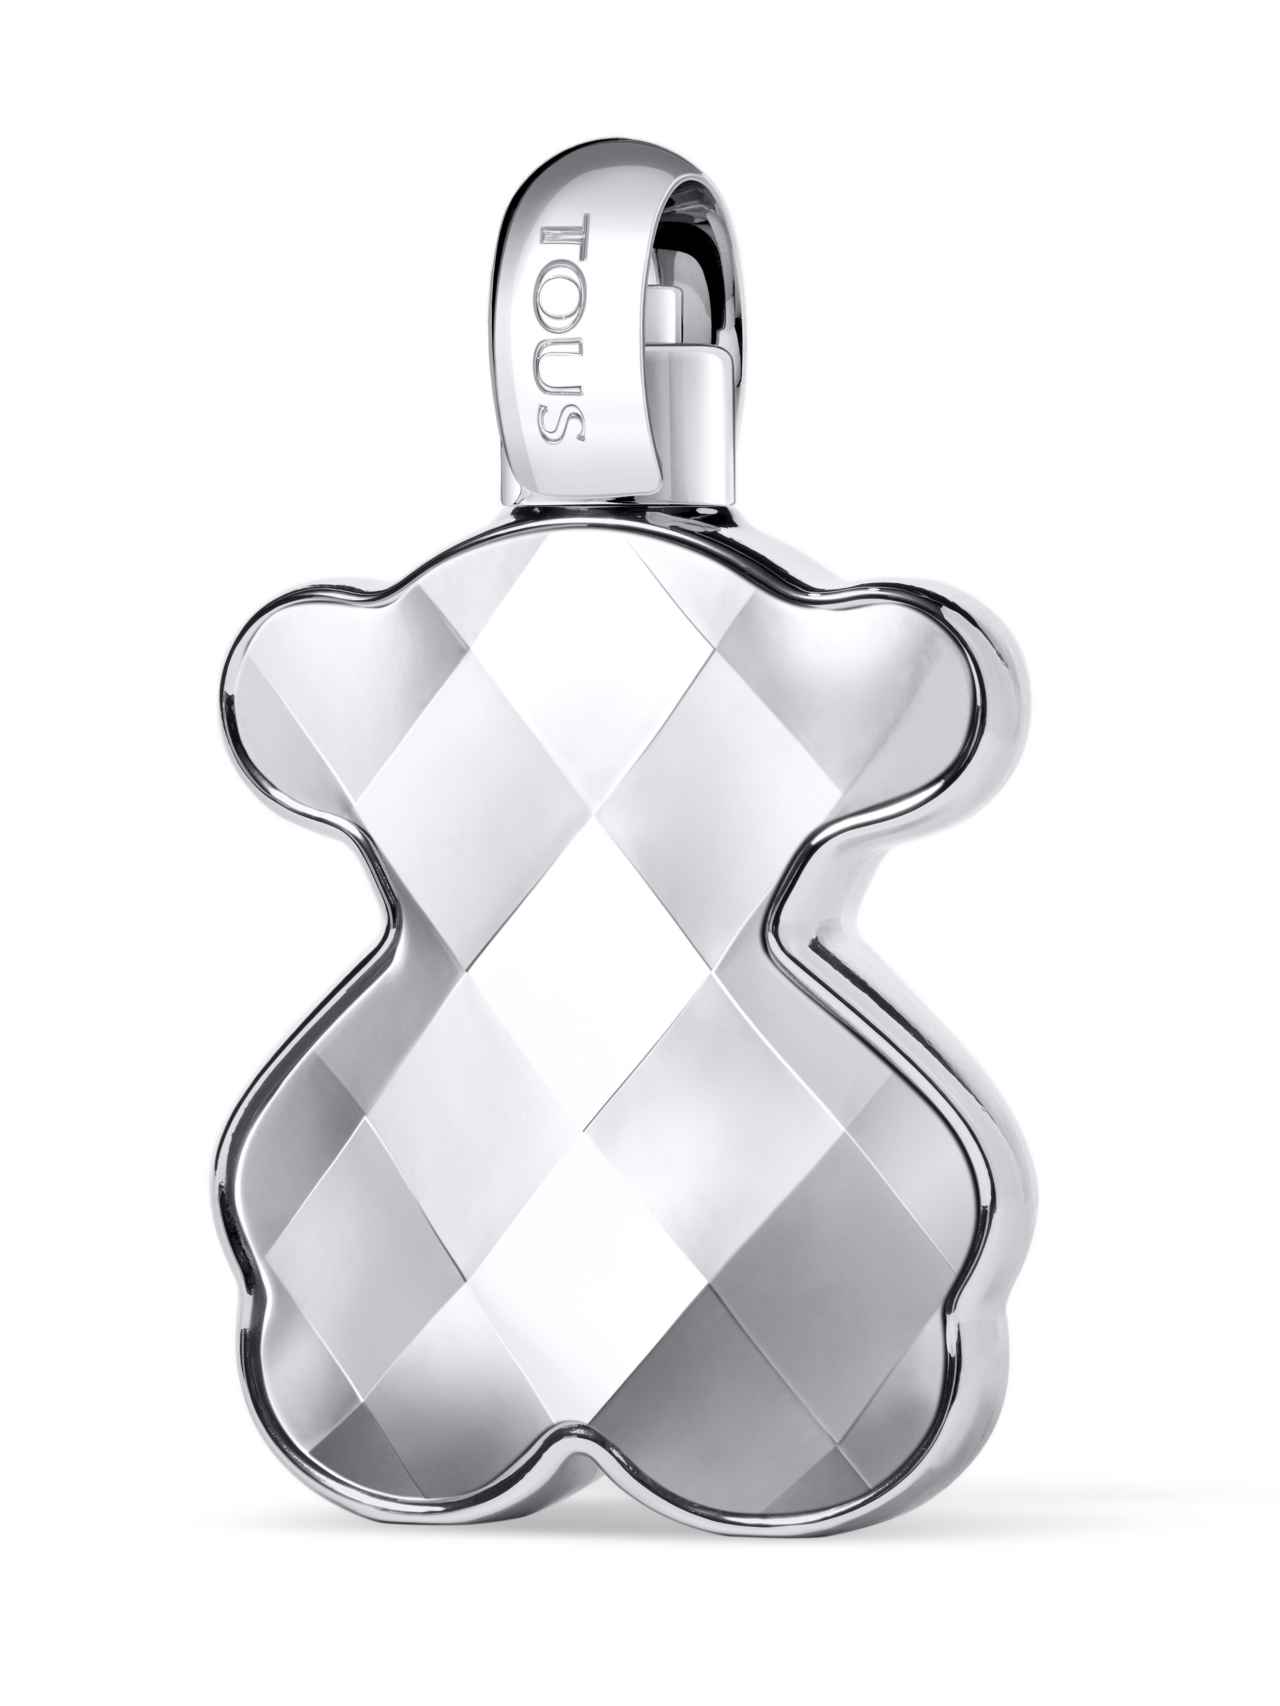 LoveMe The Silver Parfum, de TOUS.